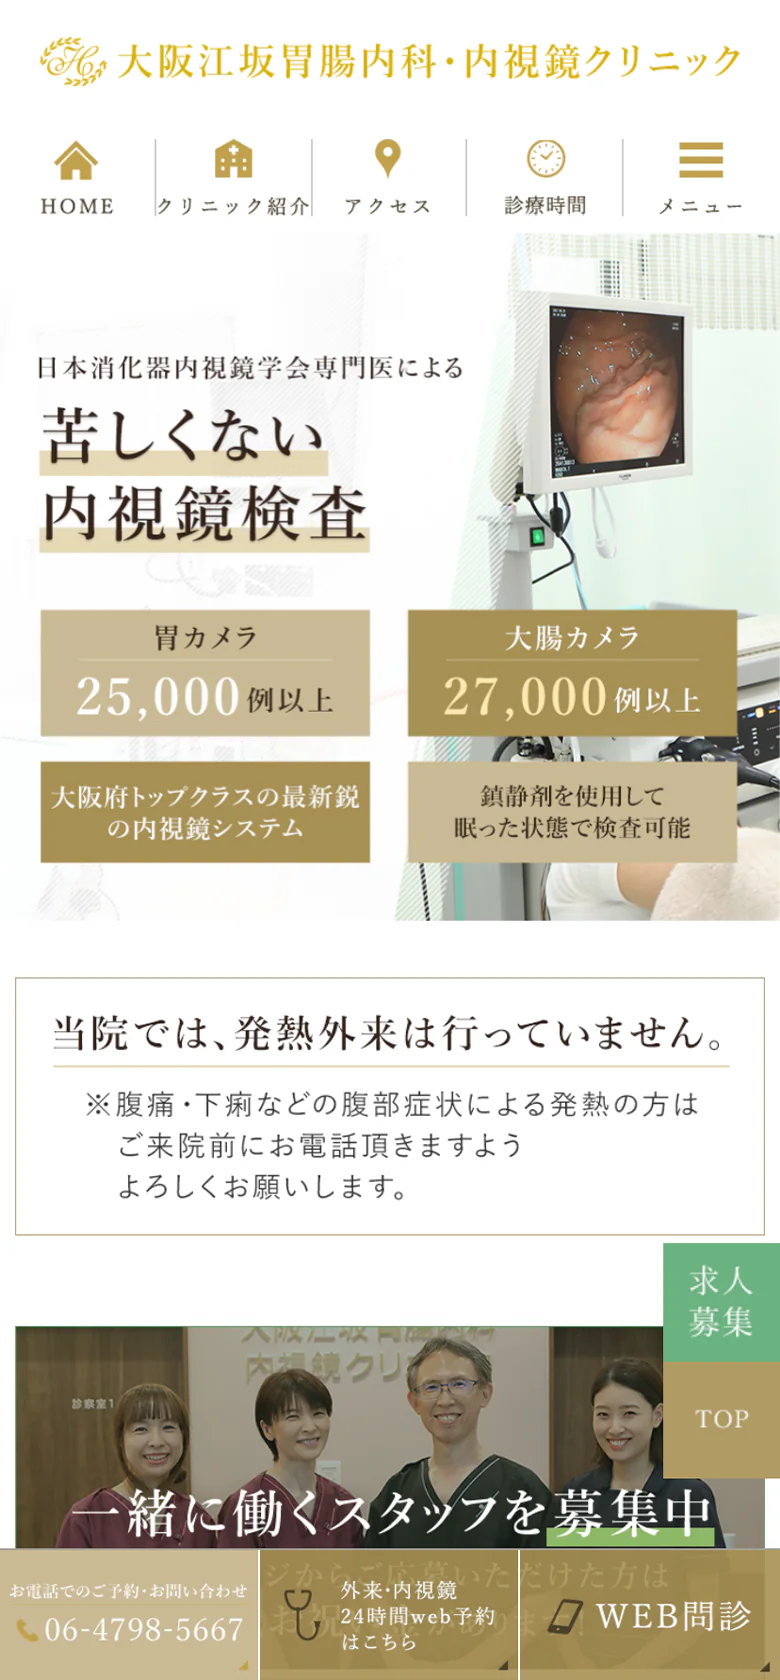 大阪江坂胃腸内科・内視鏡クリニックスマホサイトイメージ